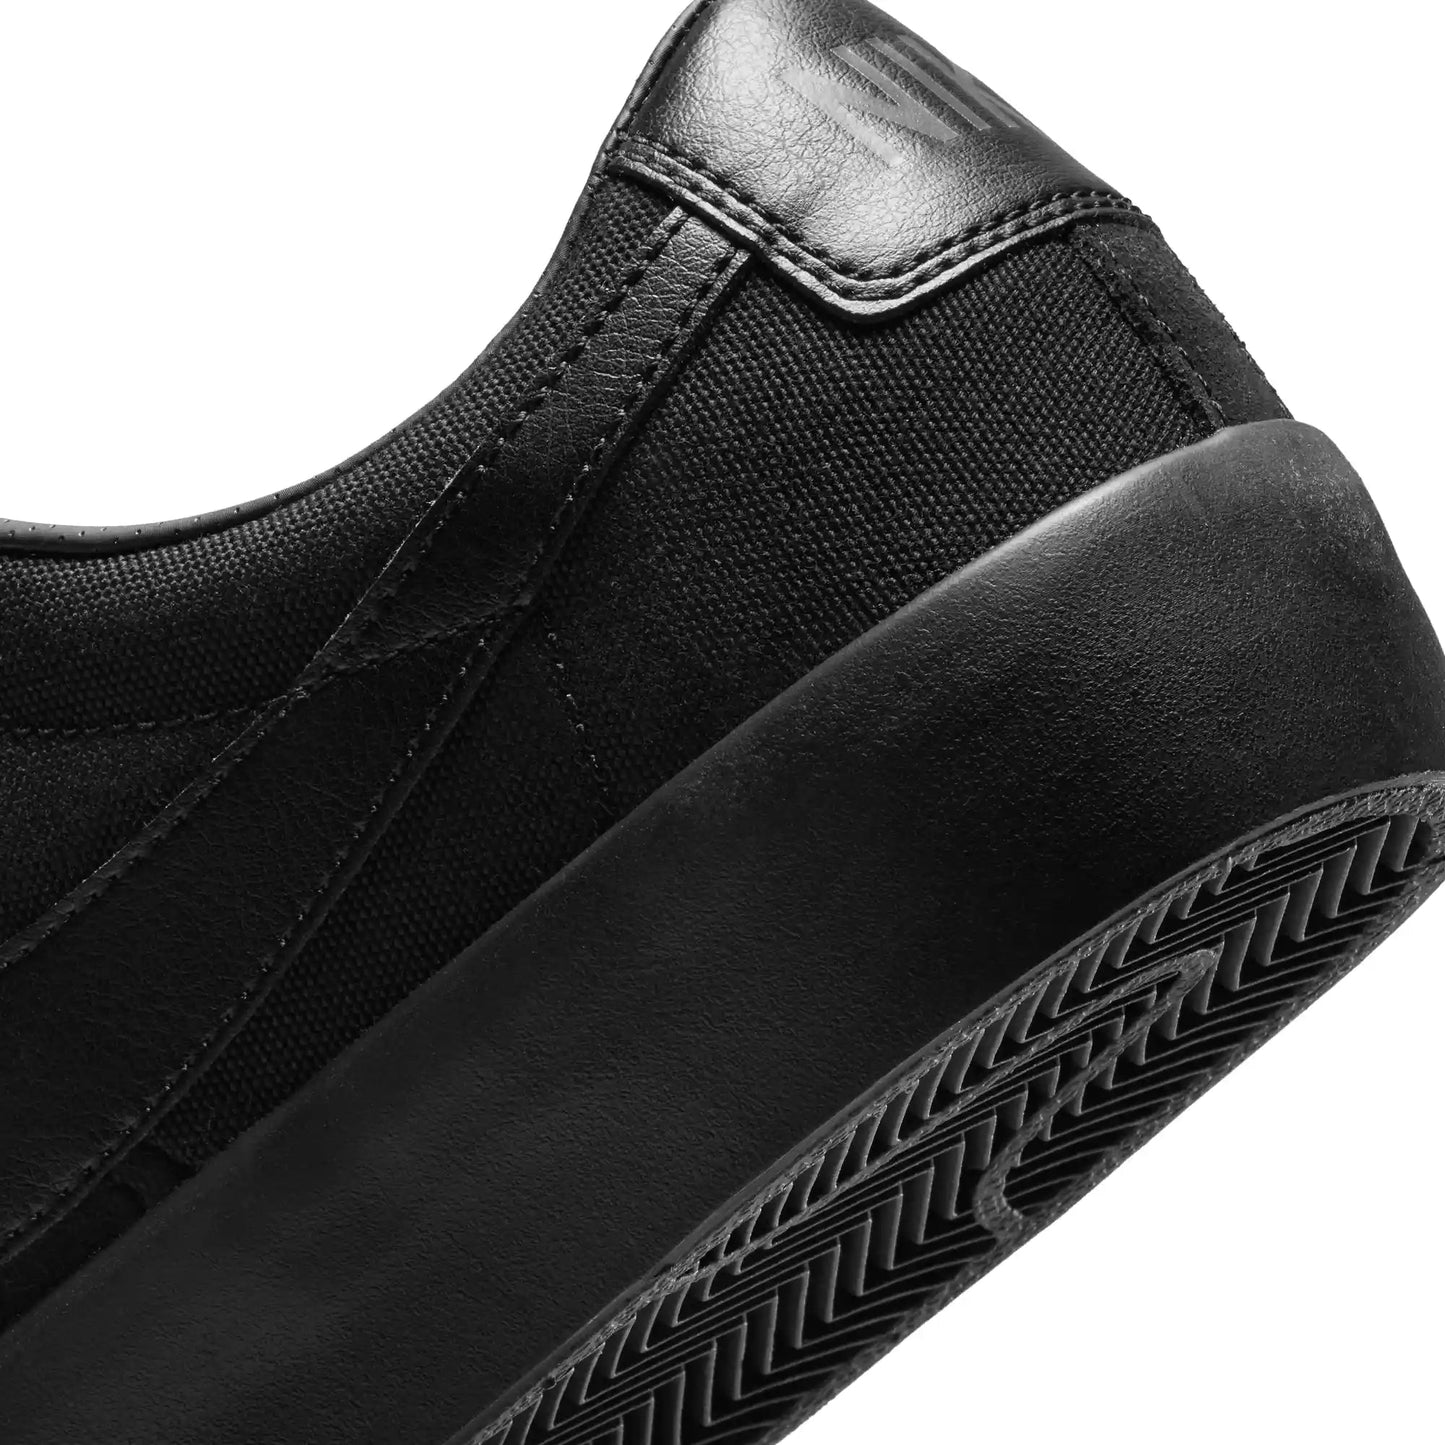 Nike SB Zoom Blazer Low Pro GT, black/black-black-anthracite - Tiki Room Skateboards - 3